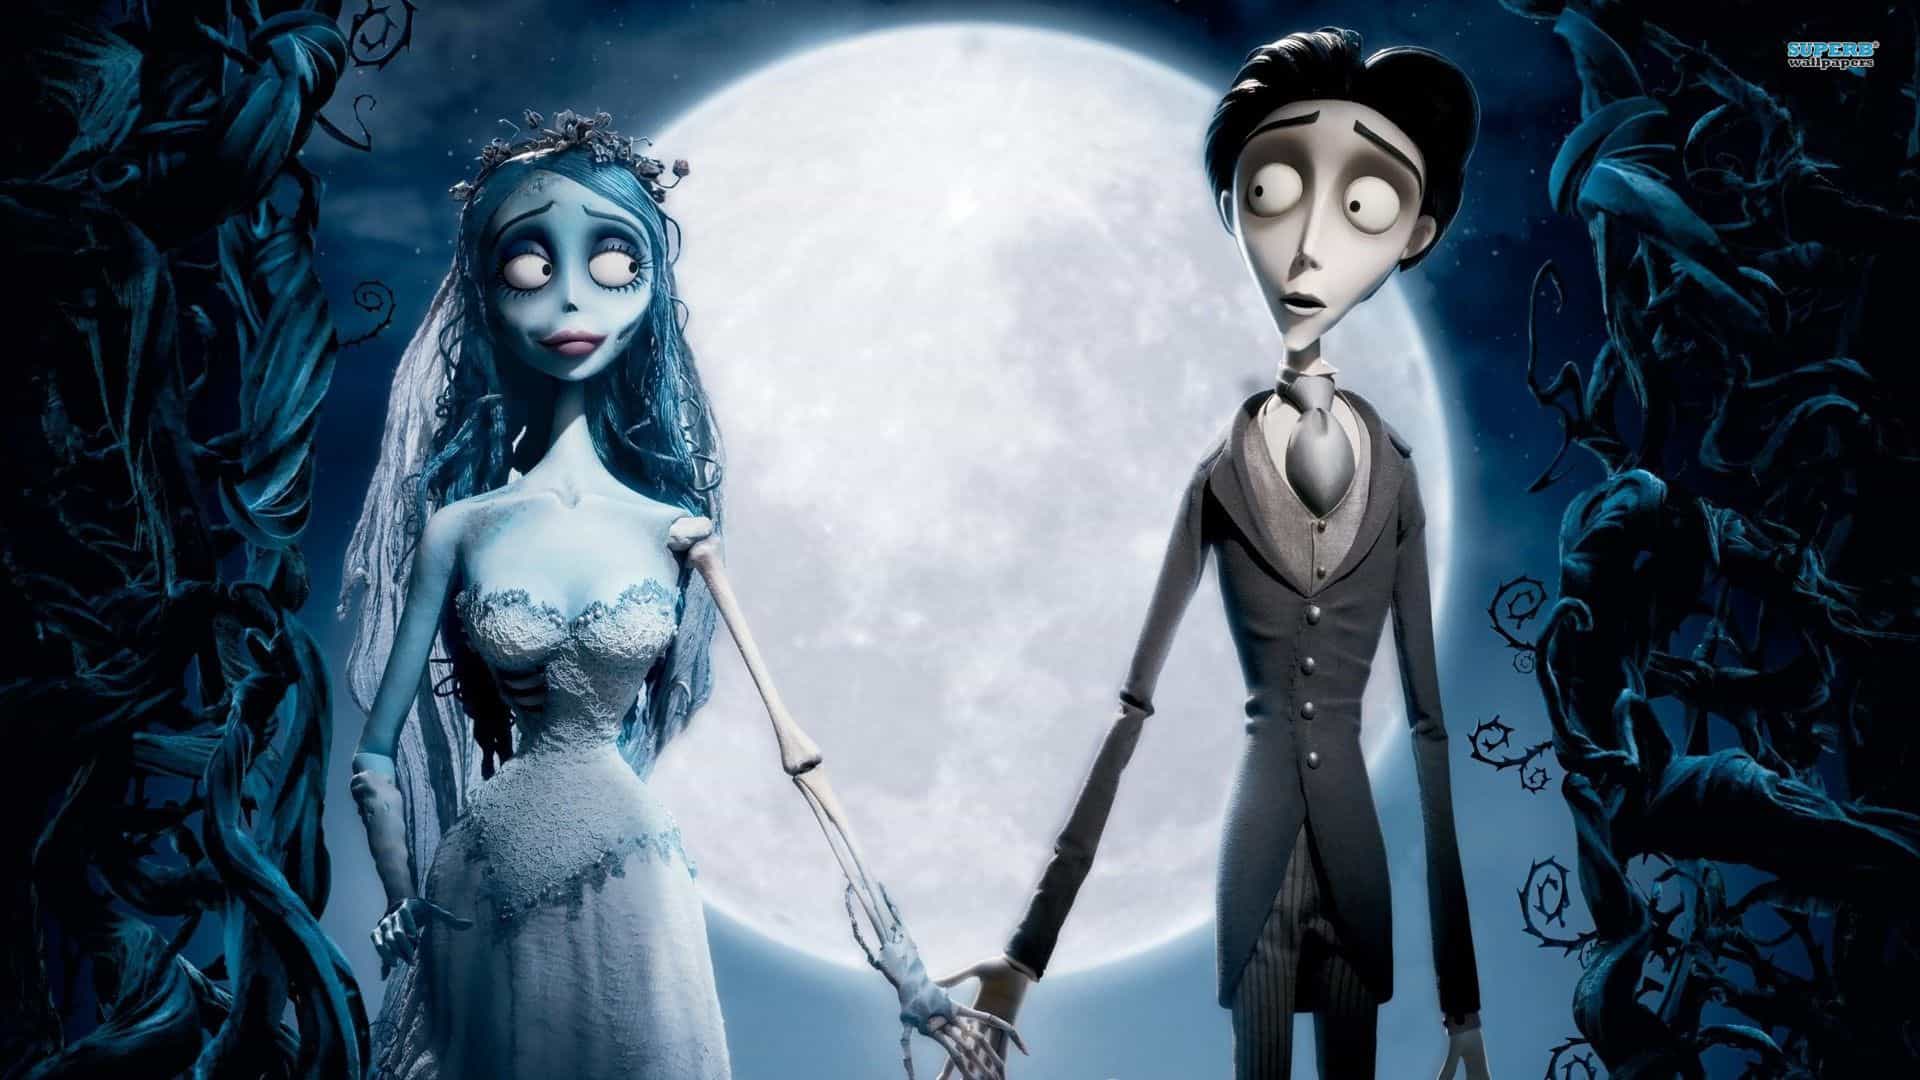 La sposa cadavere: recensione del film d’animazione di Tim Burton